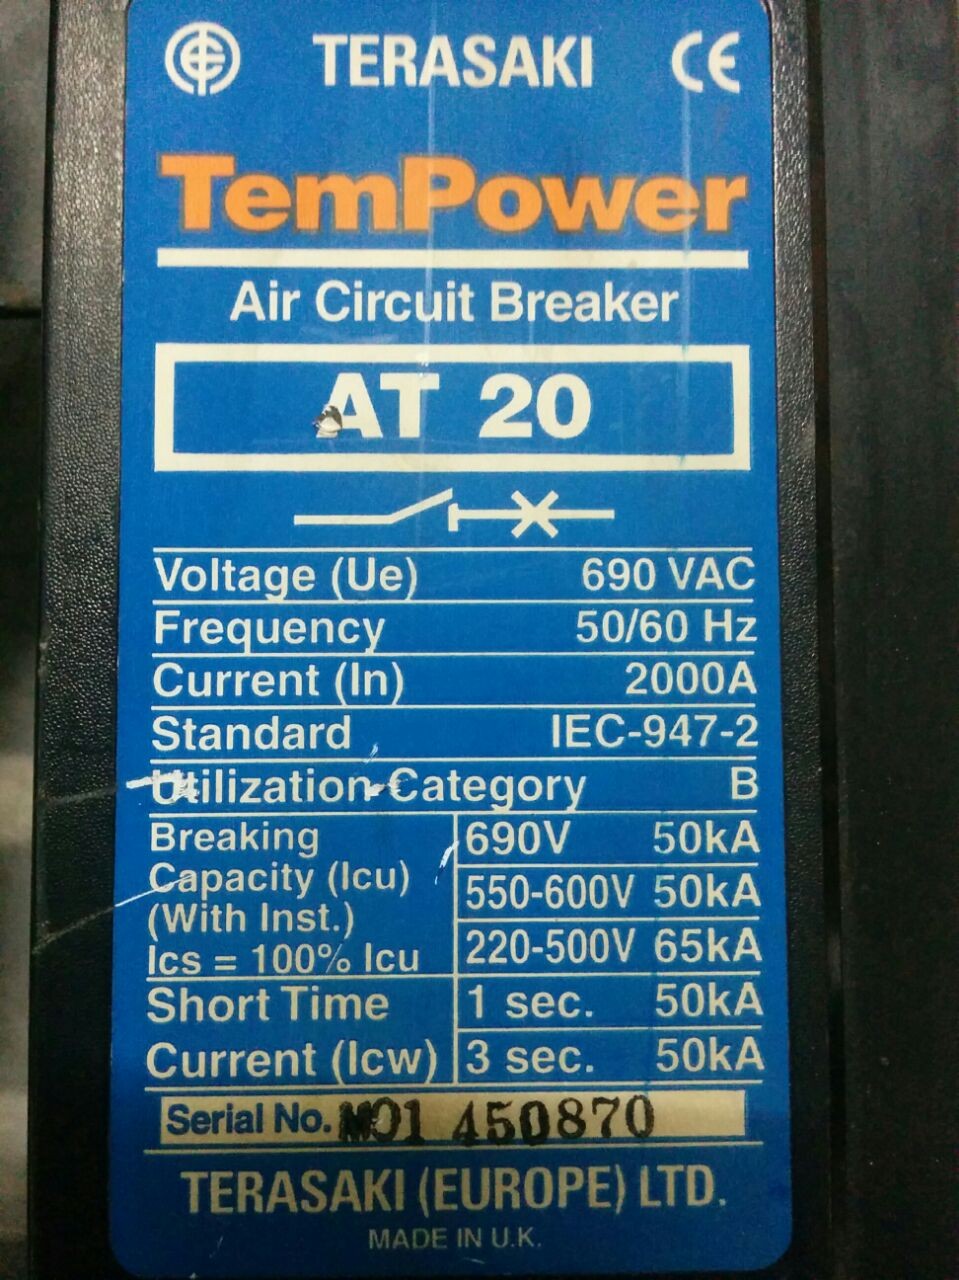 Air Circuit Breakers -  AT 20